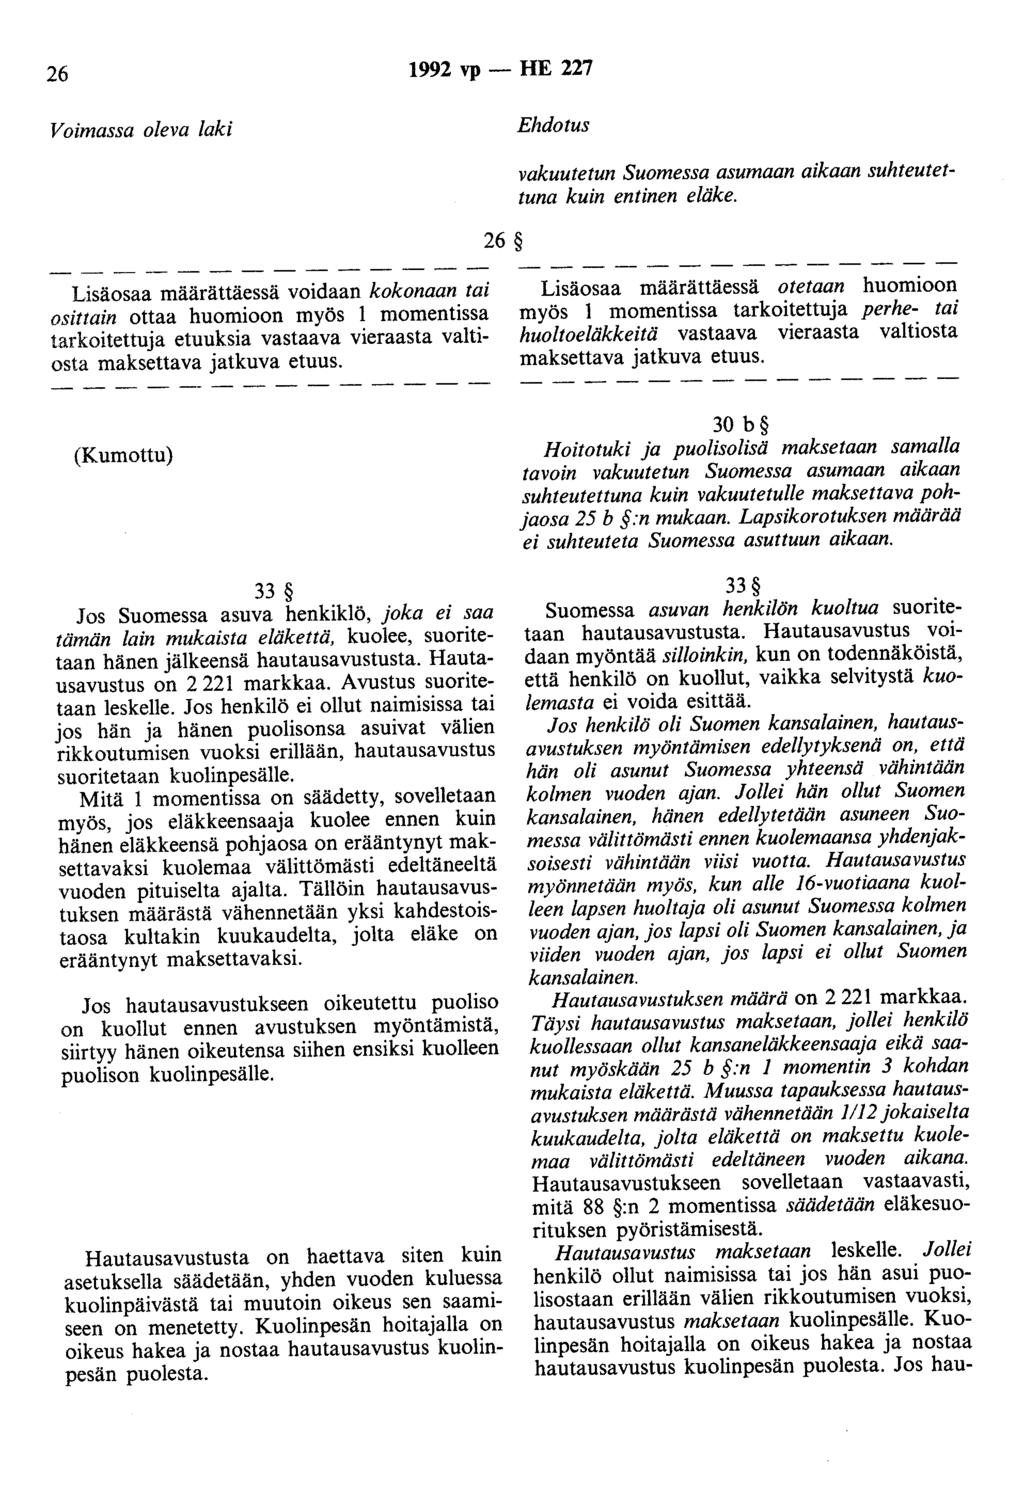 26 1992 vp- HE 227 Voimassa oleva laki Ehdotus 26 vakuutetun Suomessa asumaan aikaan suhteutettuna kuin entinen eläke.